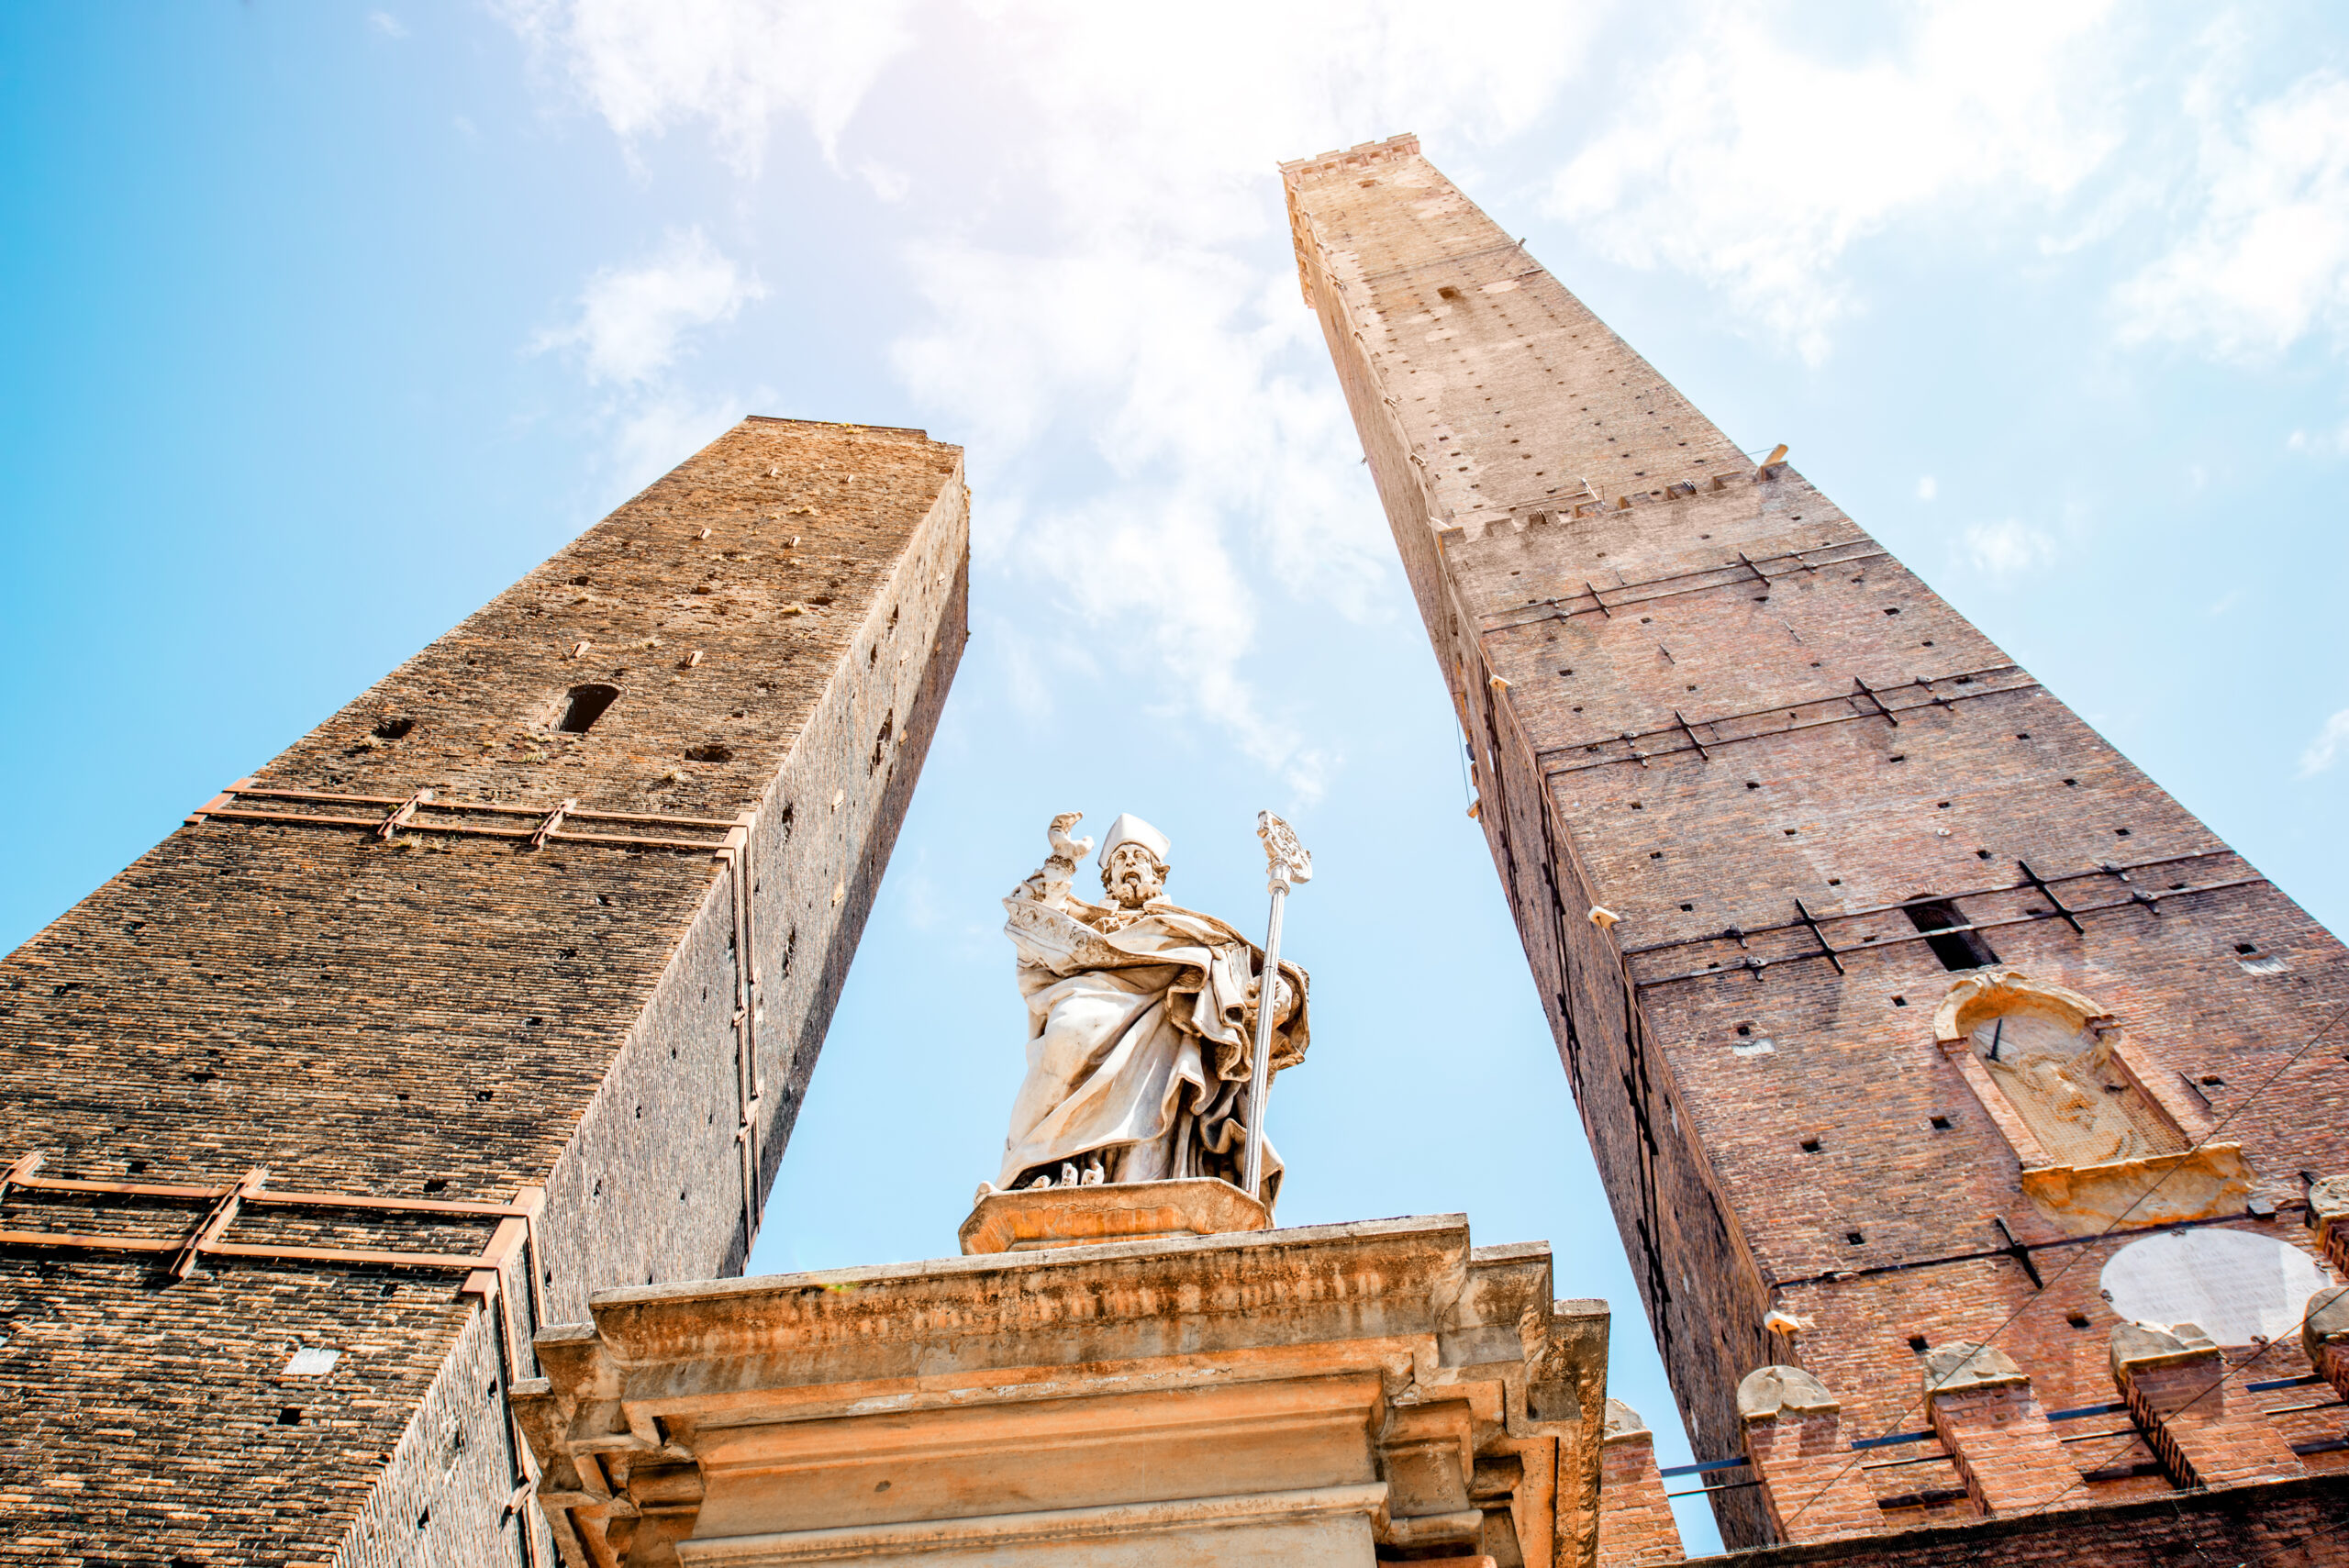 Itália: Mais uma torre inclinada preocupa autoridades. Bolonha fecha praça  central da cidade – Executive Digest